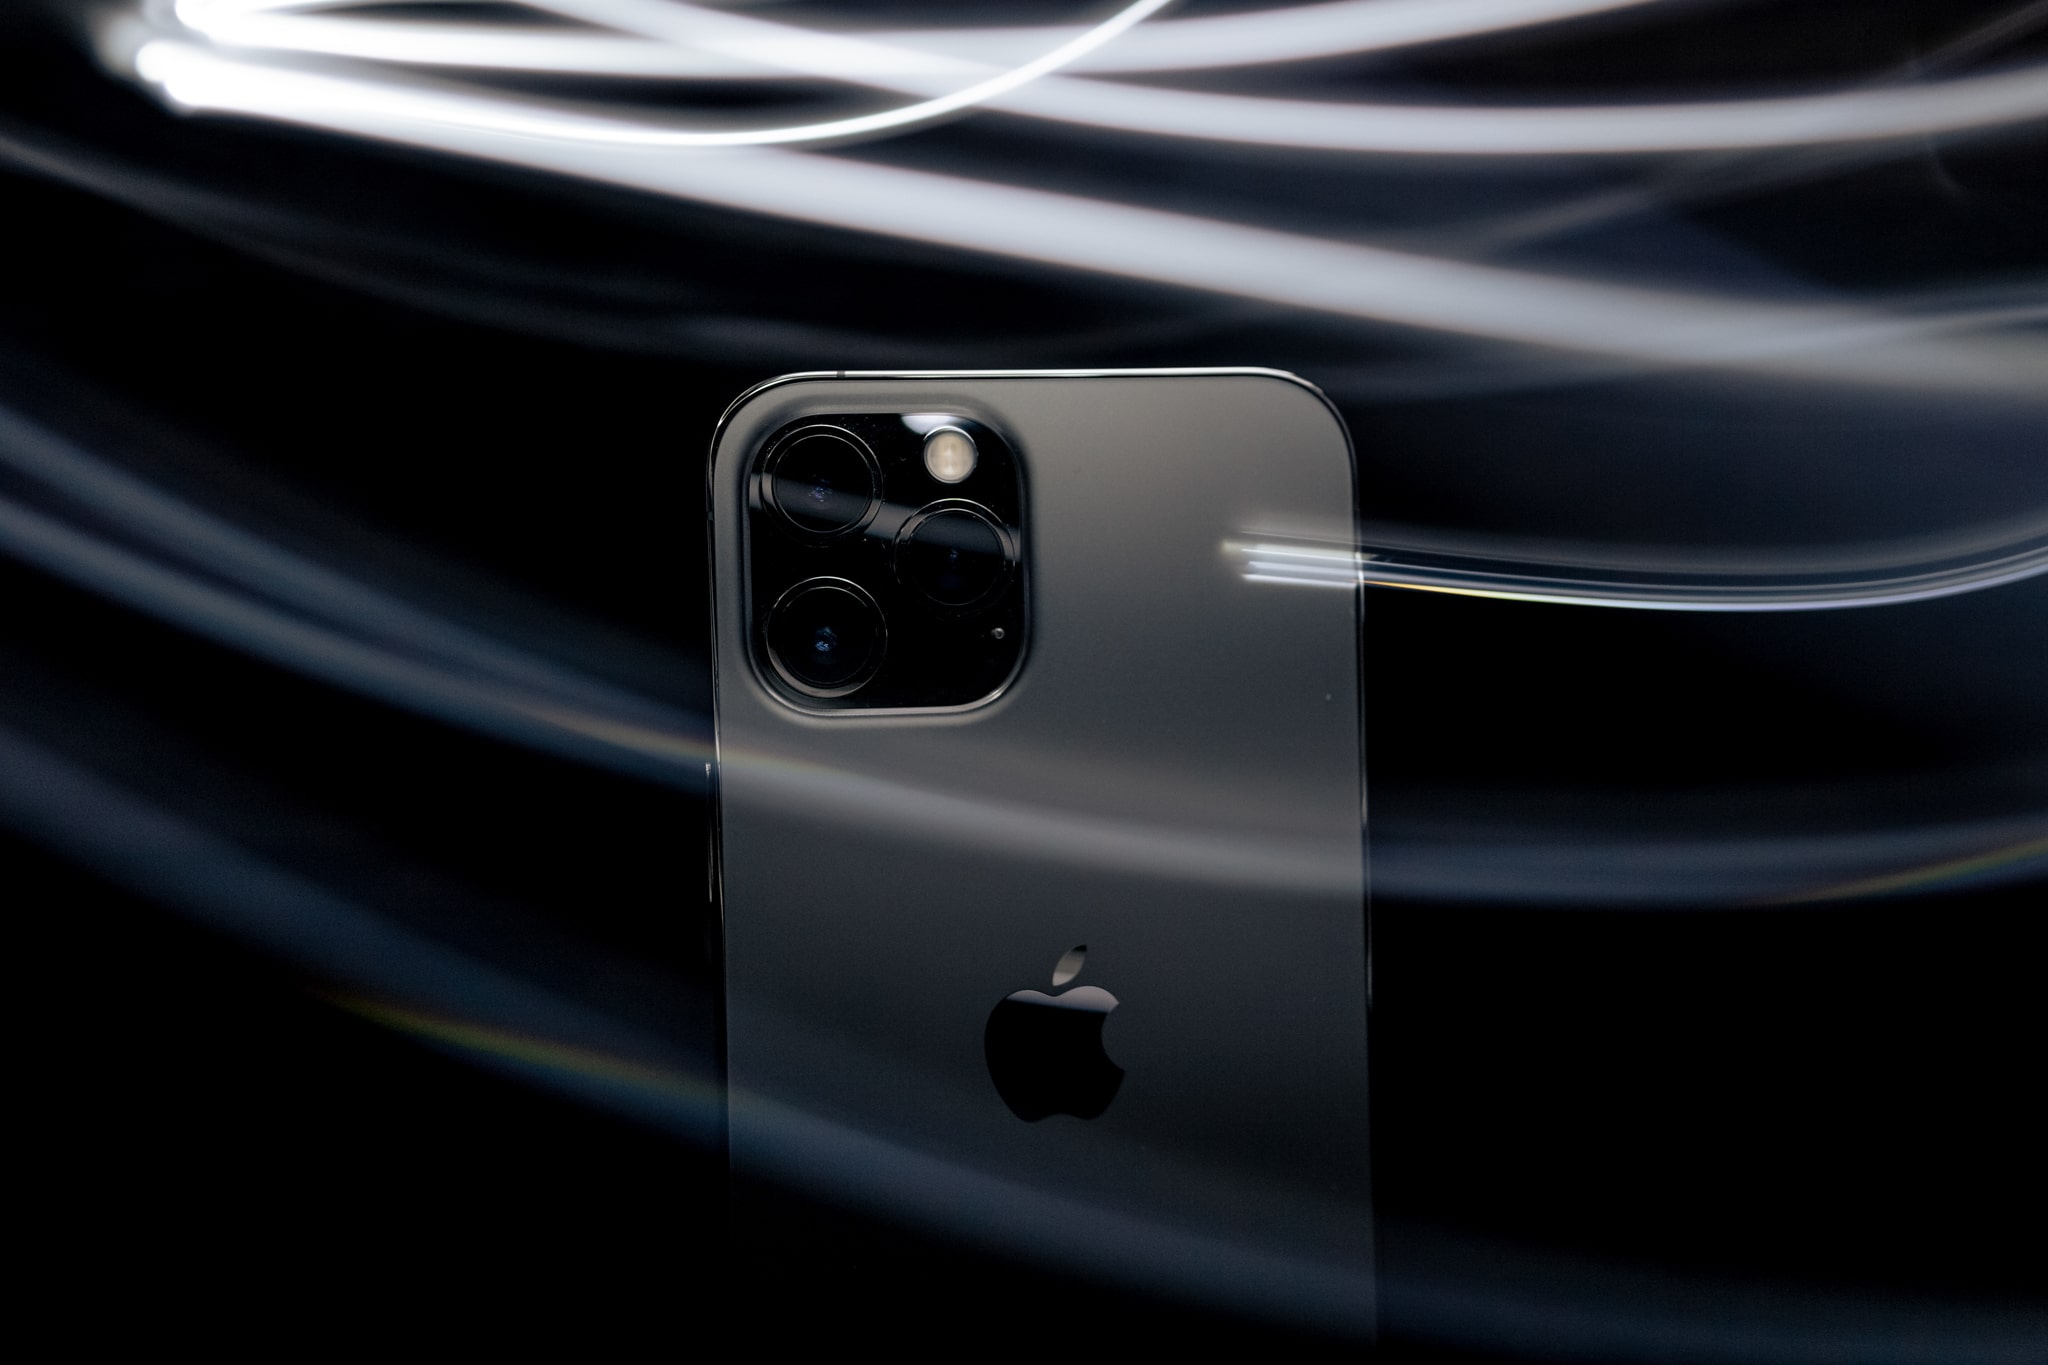 iPhone 13 sắp tới sẽ có mặt lưng nhám mờ màu đen, màn hình Always-on và nhiều tính năng mới